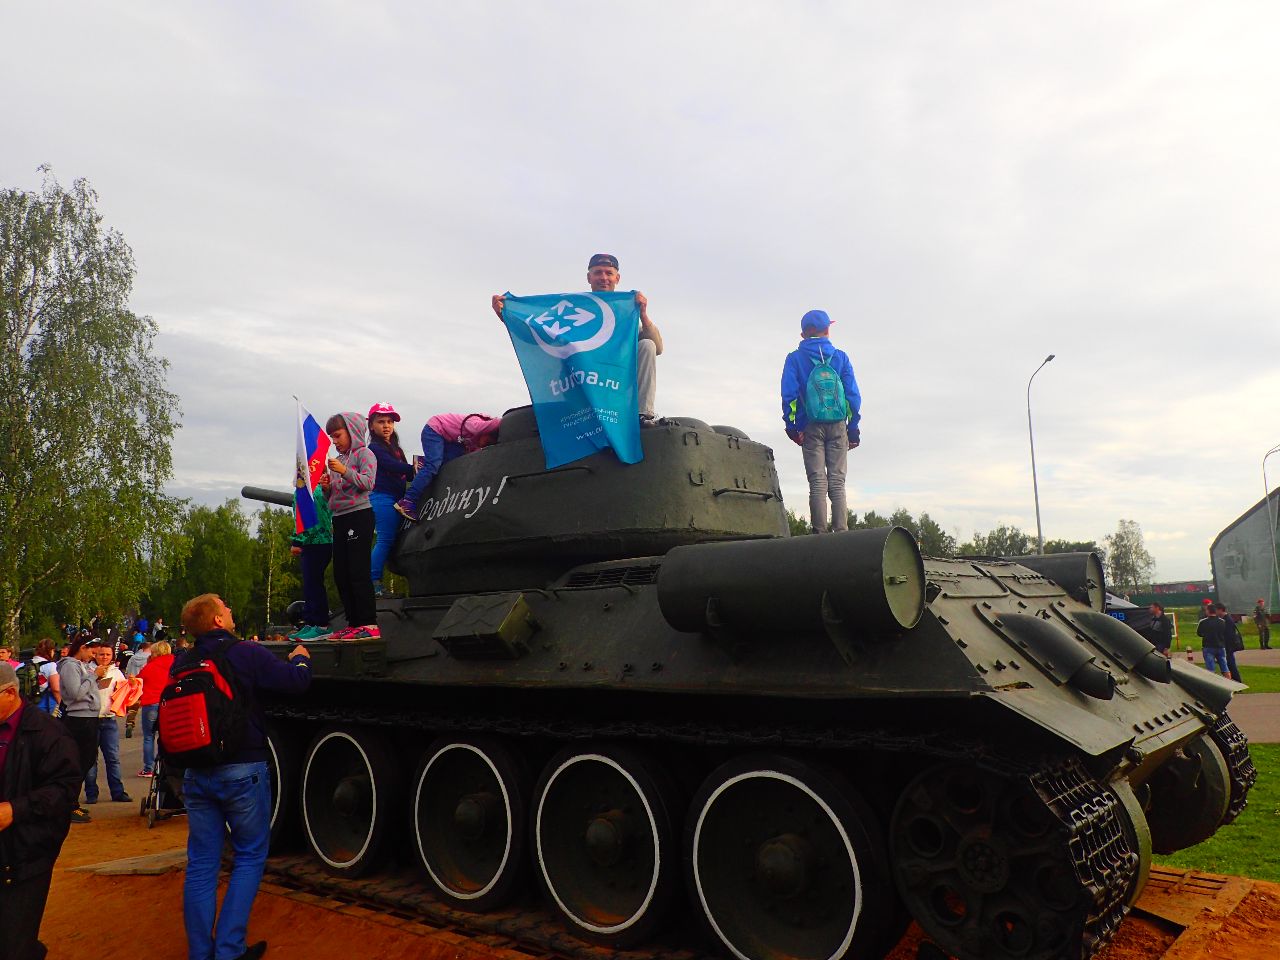 Финал танкового биатлона 2016. 